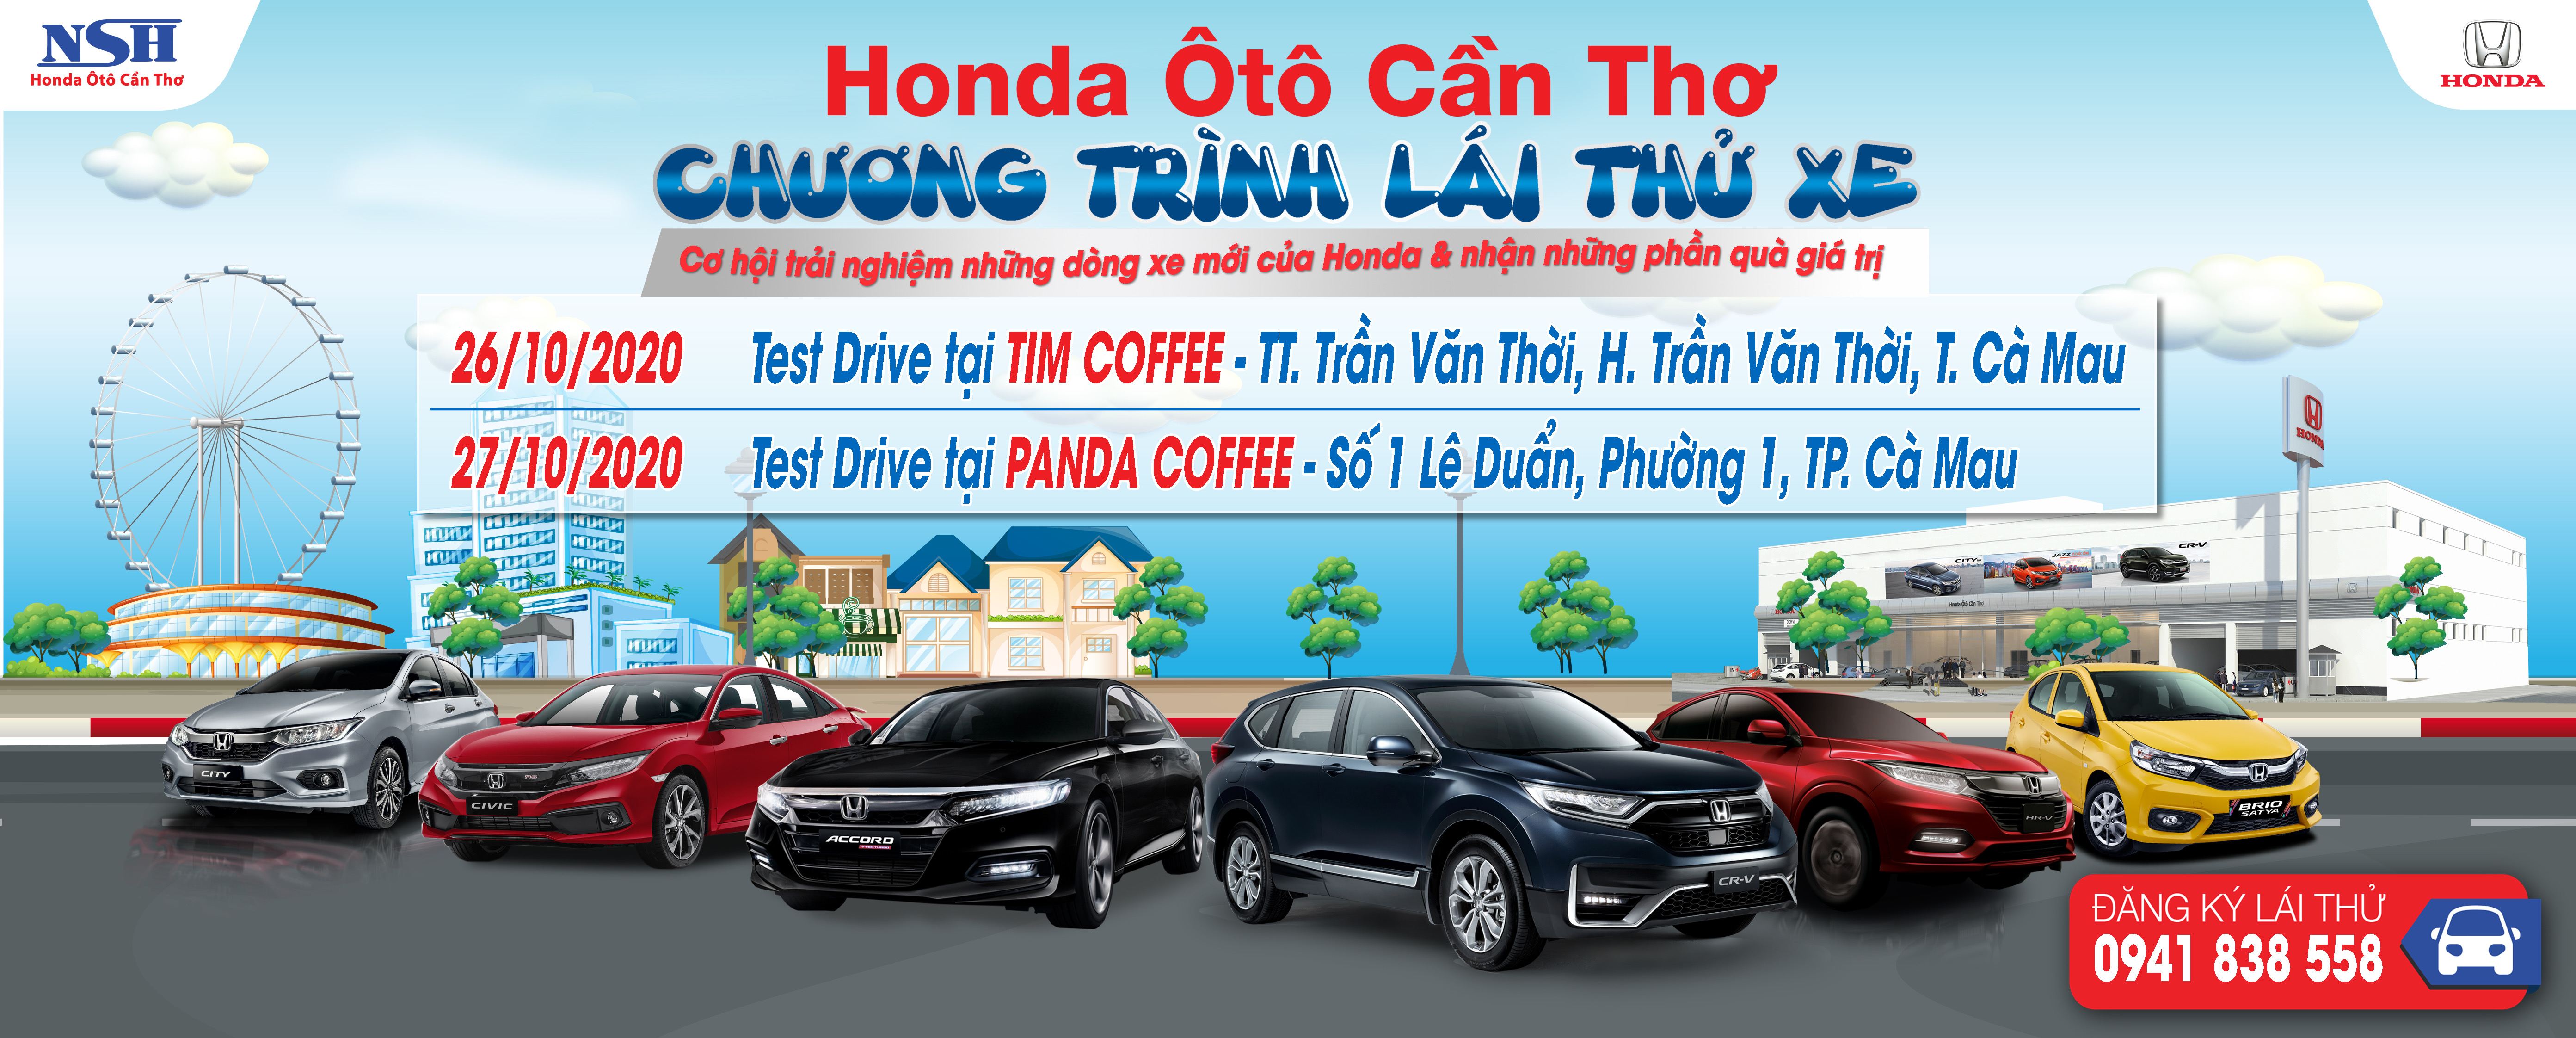 Lái thử xe ô tô Honda tại Cà Mau: Huyện Trần Văn Thời và TP. Cà Mau